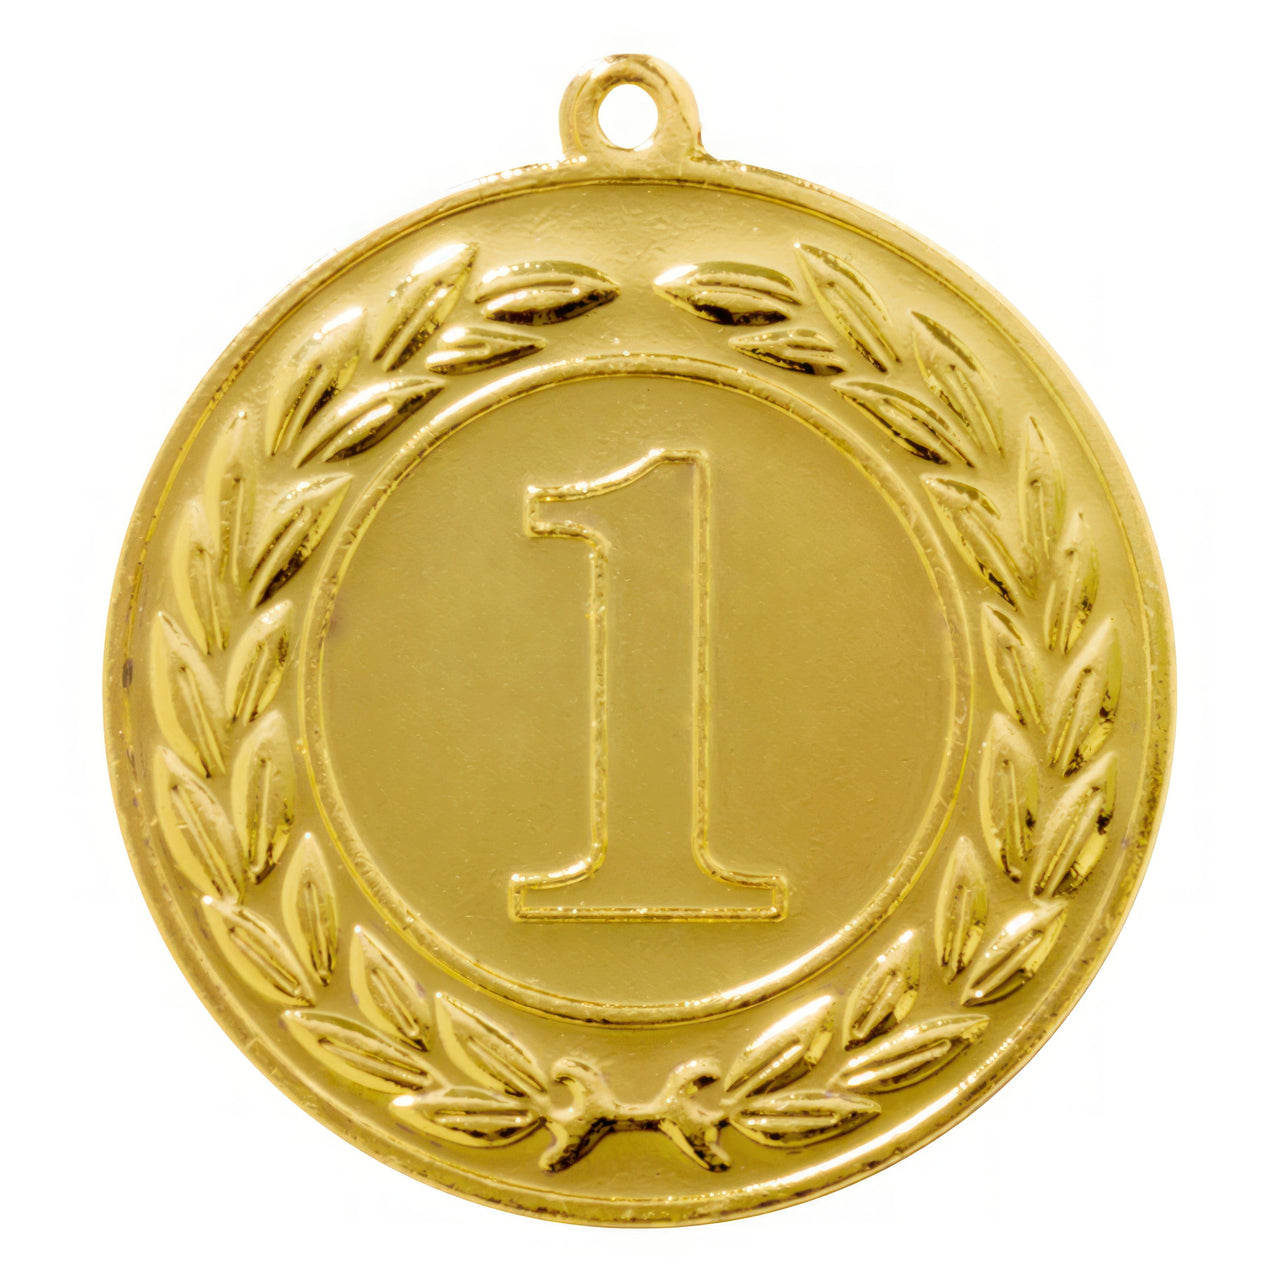 Eine goldene Medaille Essen 40 mm PK79216 mit einer Eins darin als Auszeichnung. (POMEKI)